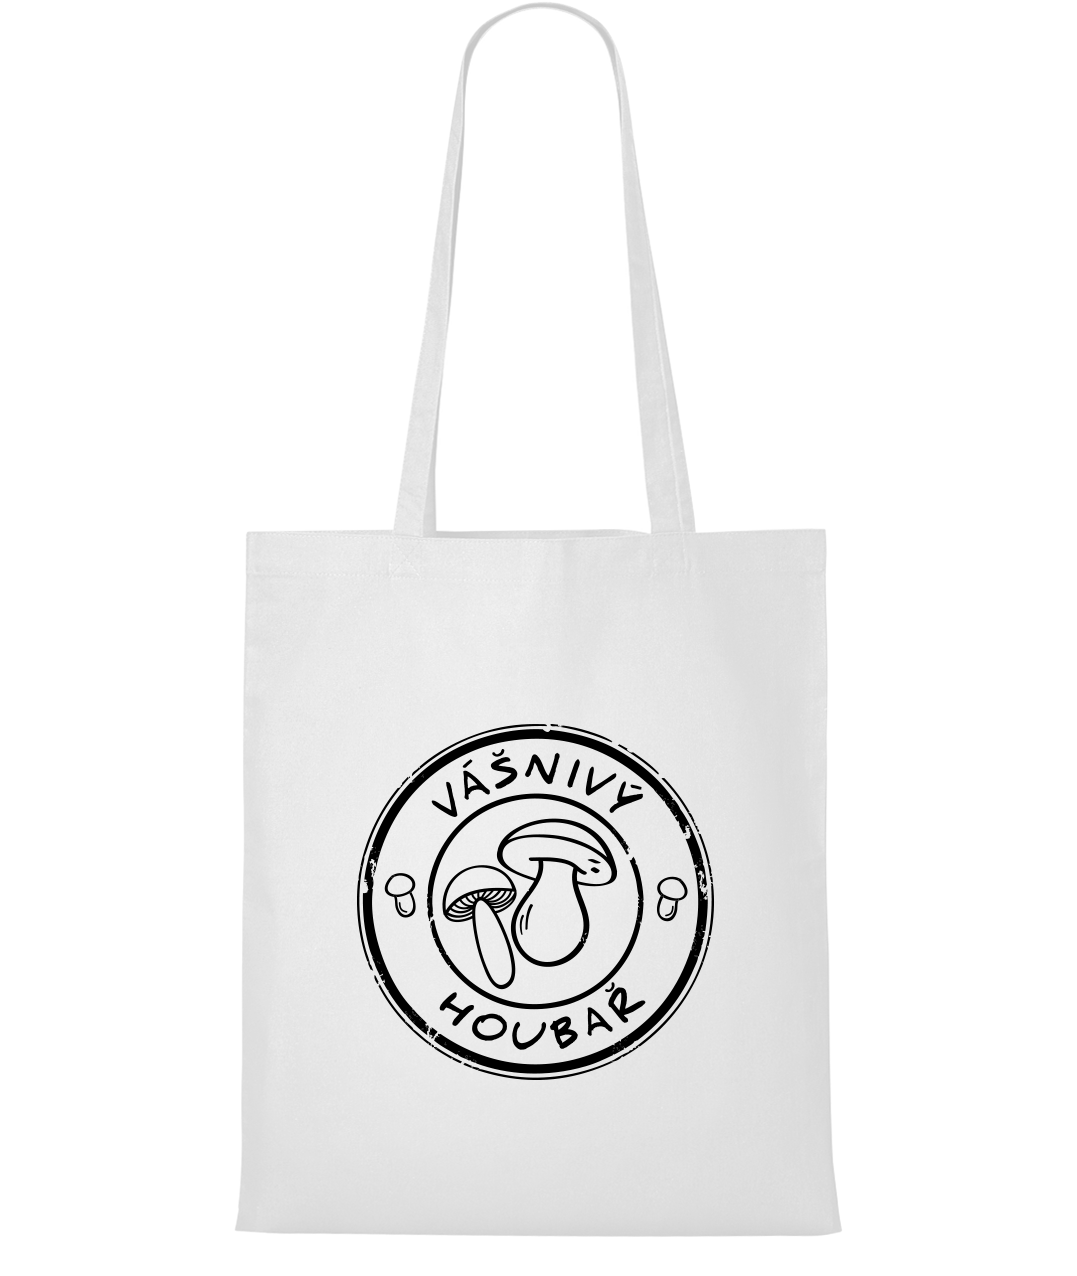 Nákupní taška - Vášnivý houbař Barva: Bílá